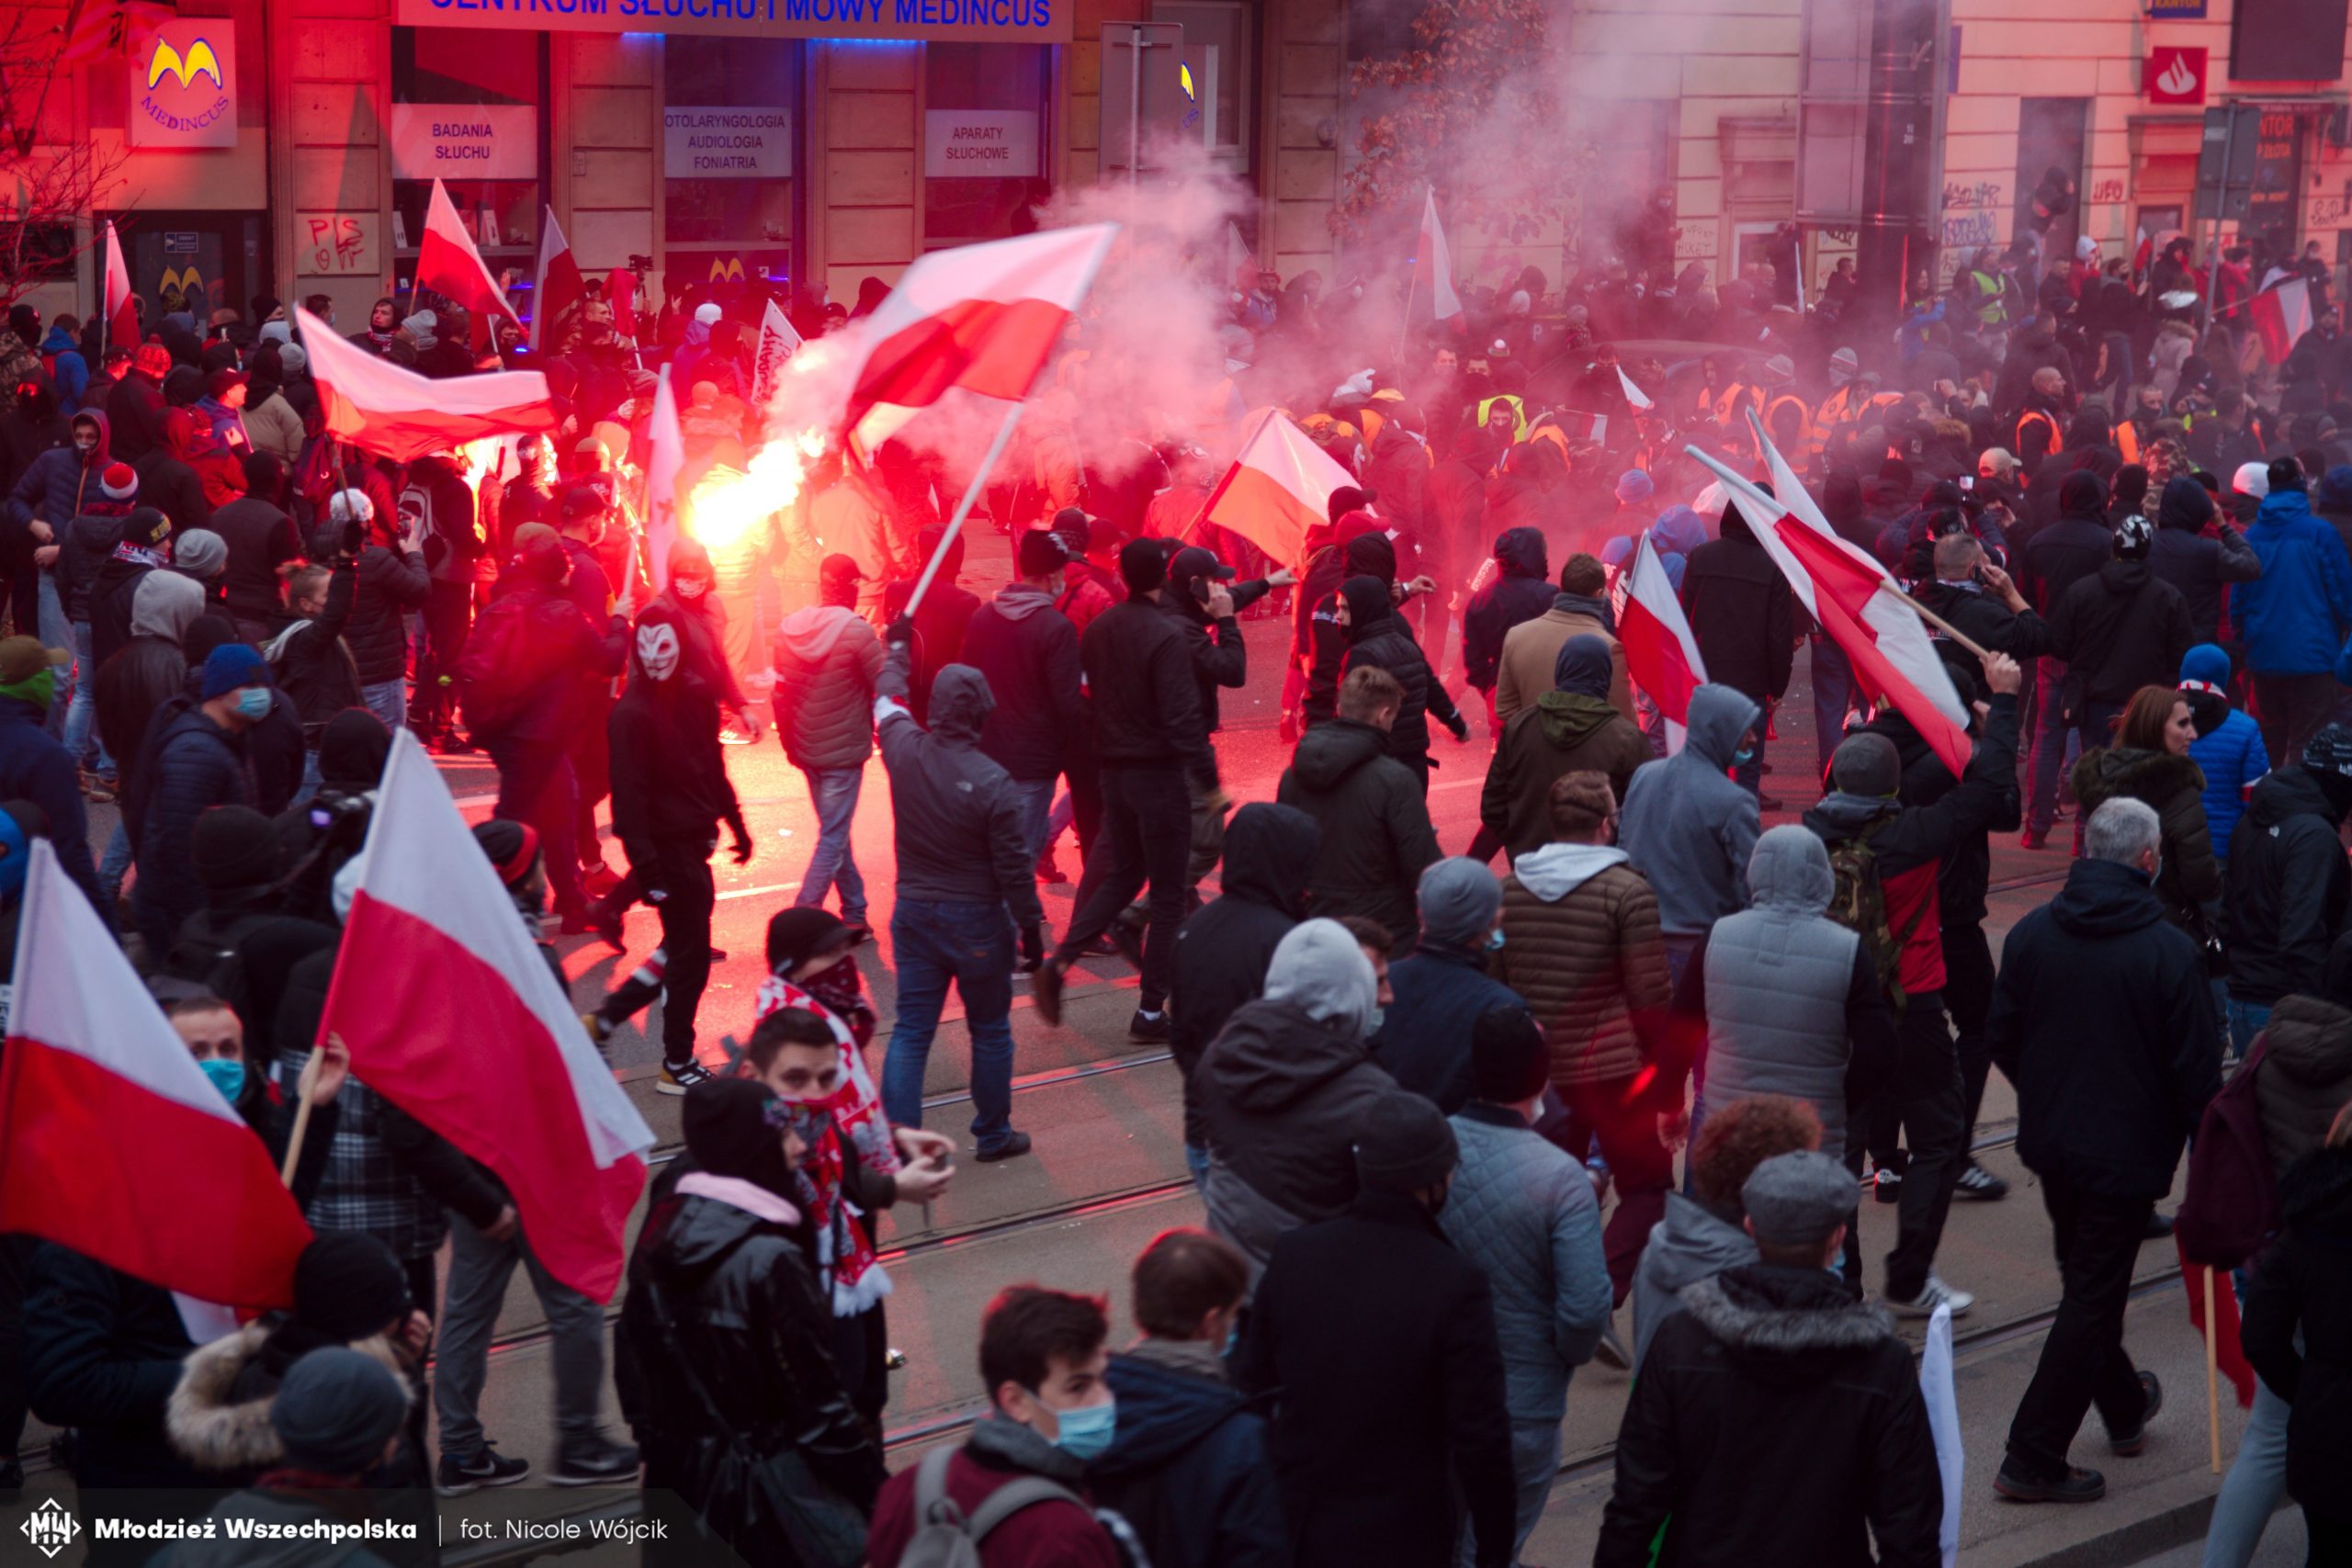 Polscy prawicowcy przegrają wszystko. Hiperliberalizmu nie zwalczy się... liberalizmem